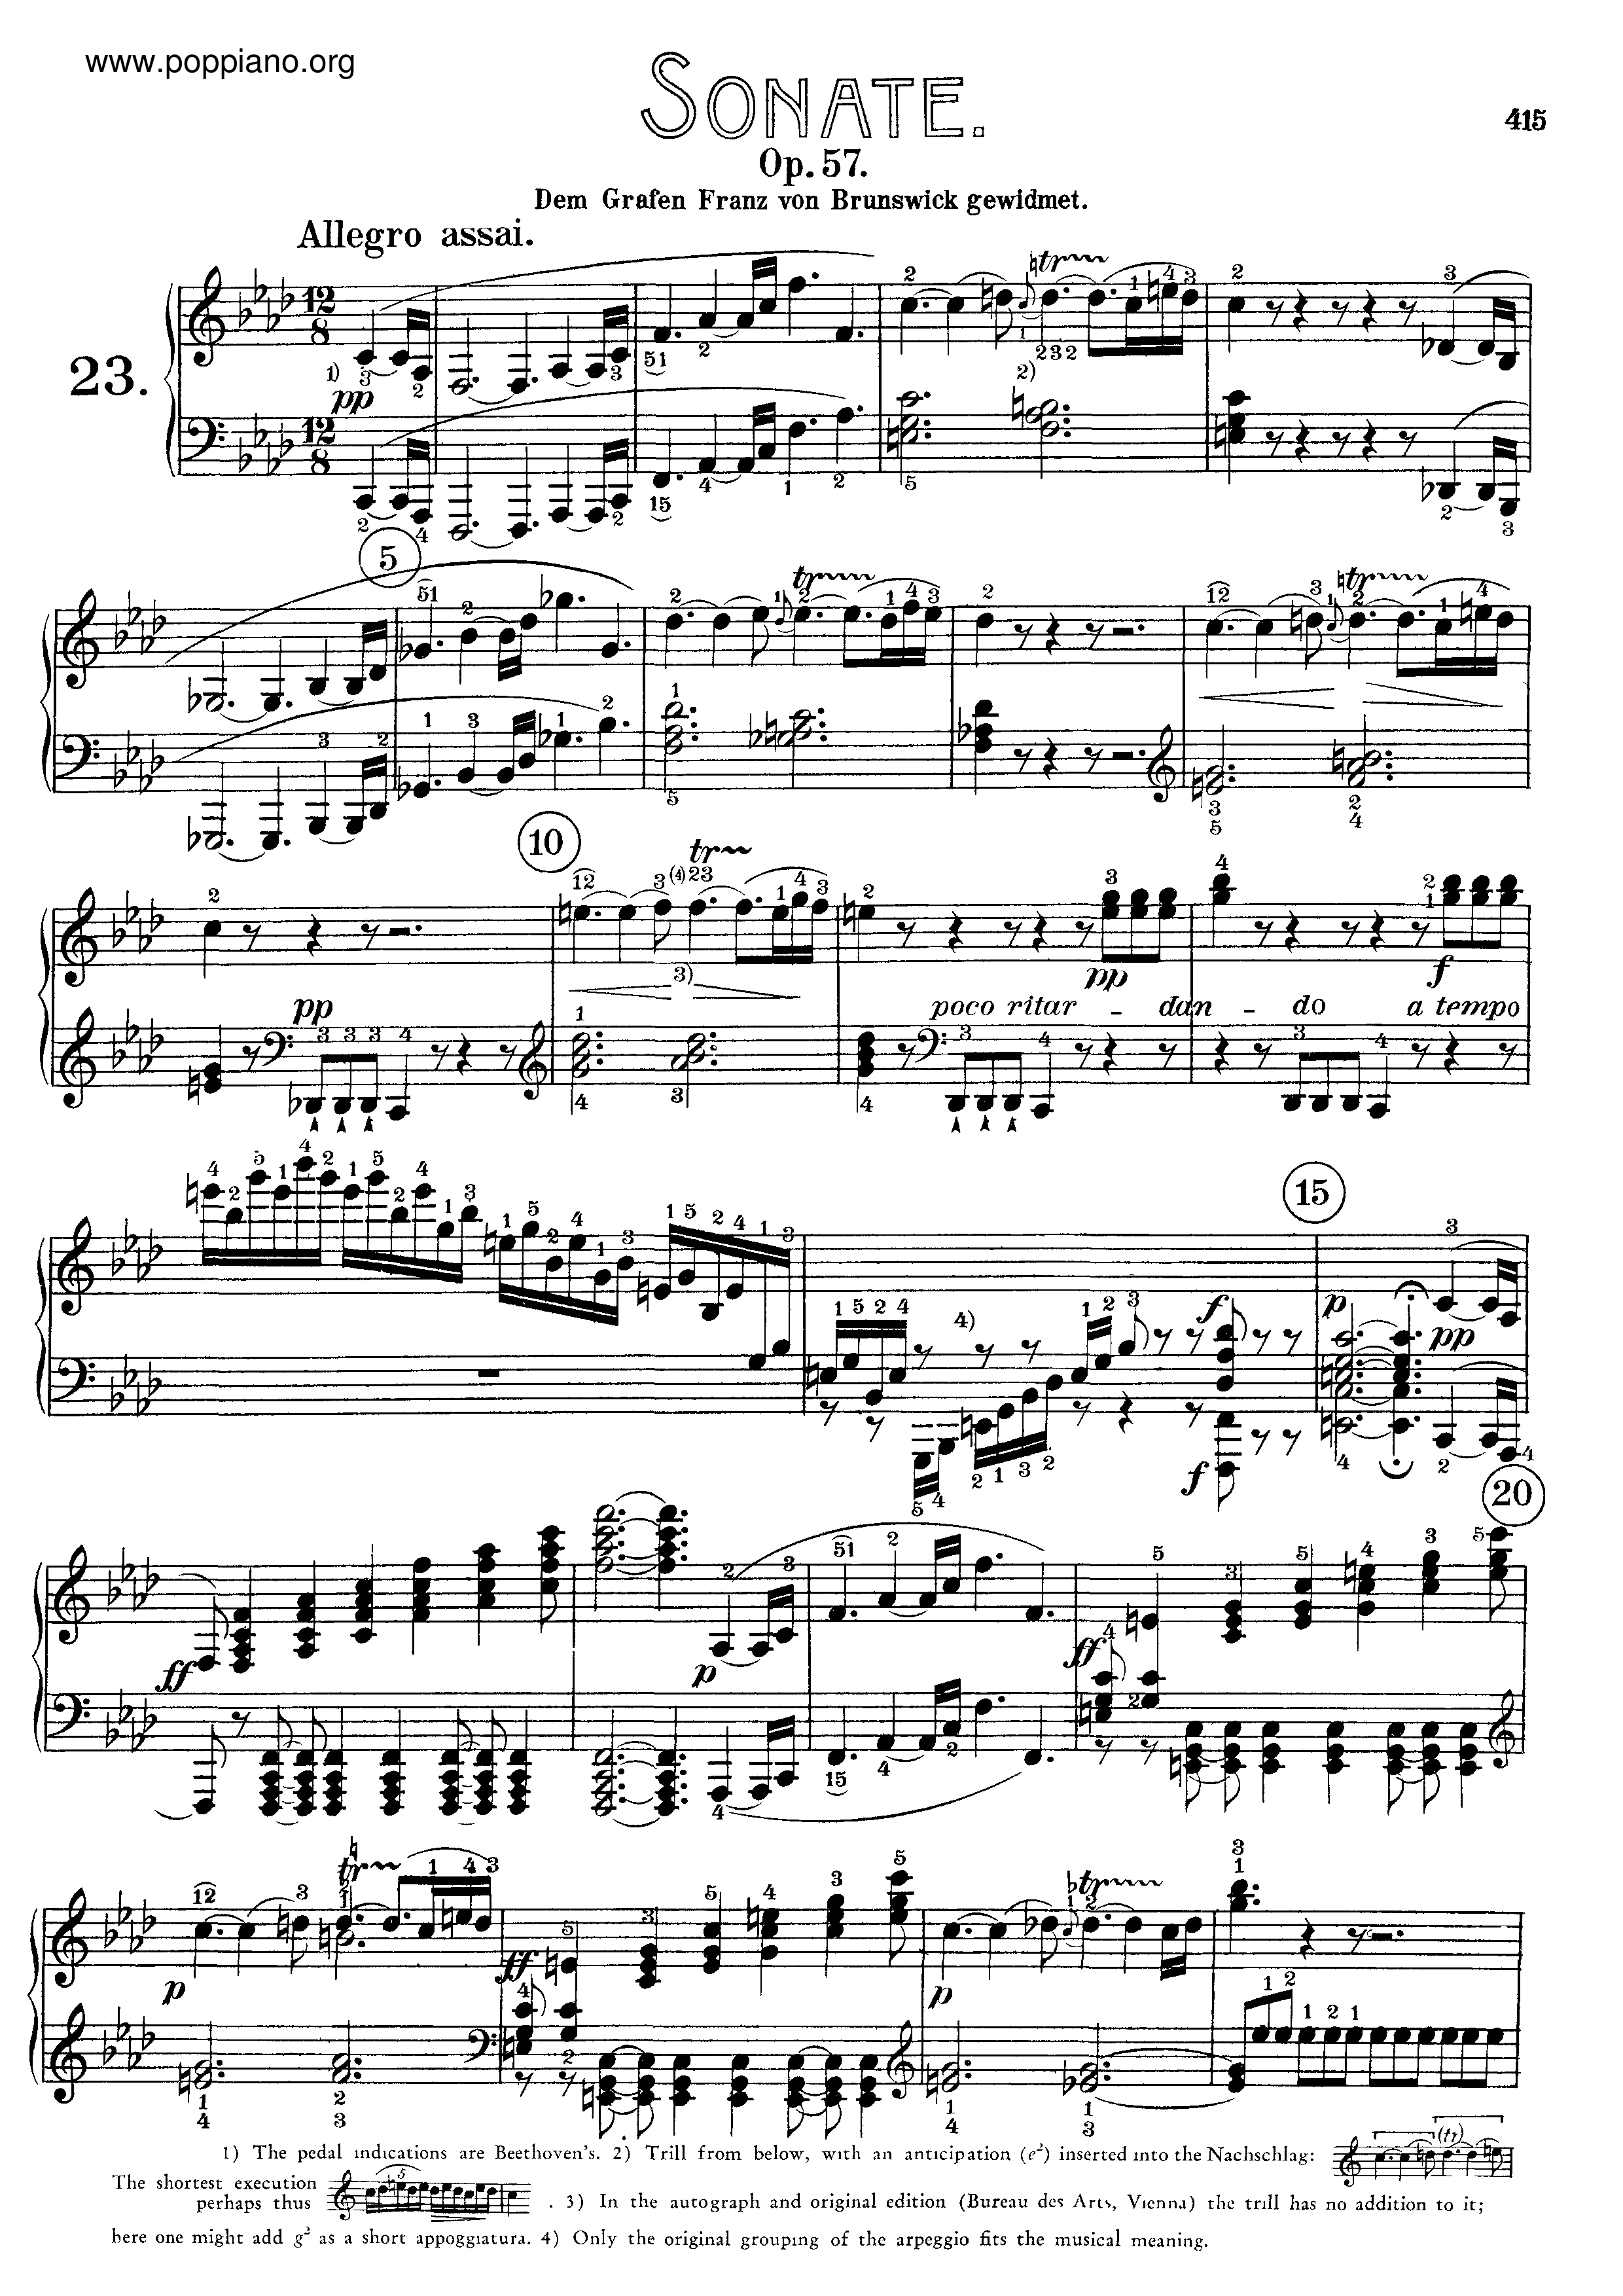 Sonata No. 23 in F minorピアノ譜